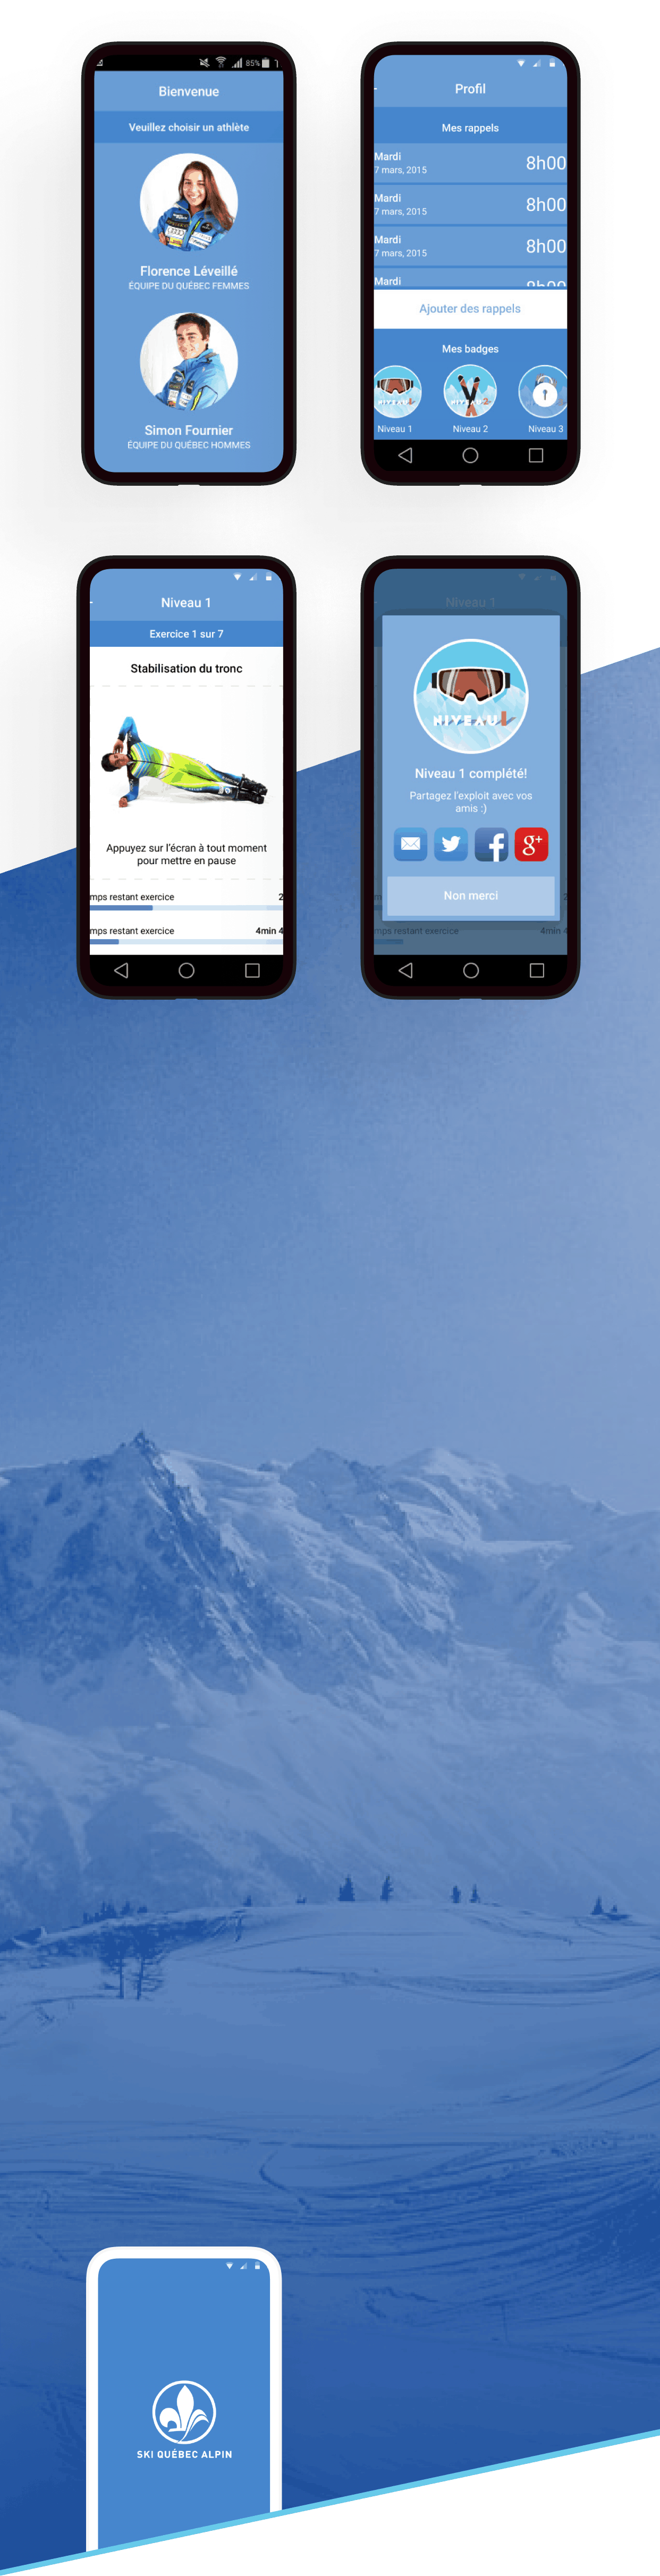 Ski Québec Alpin sur une téléphone mobile